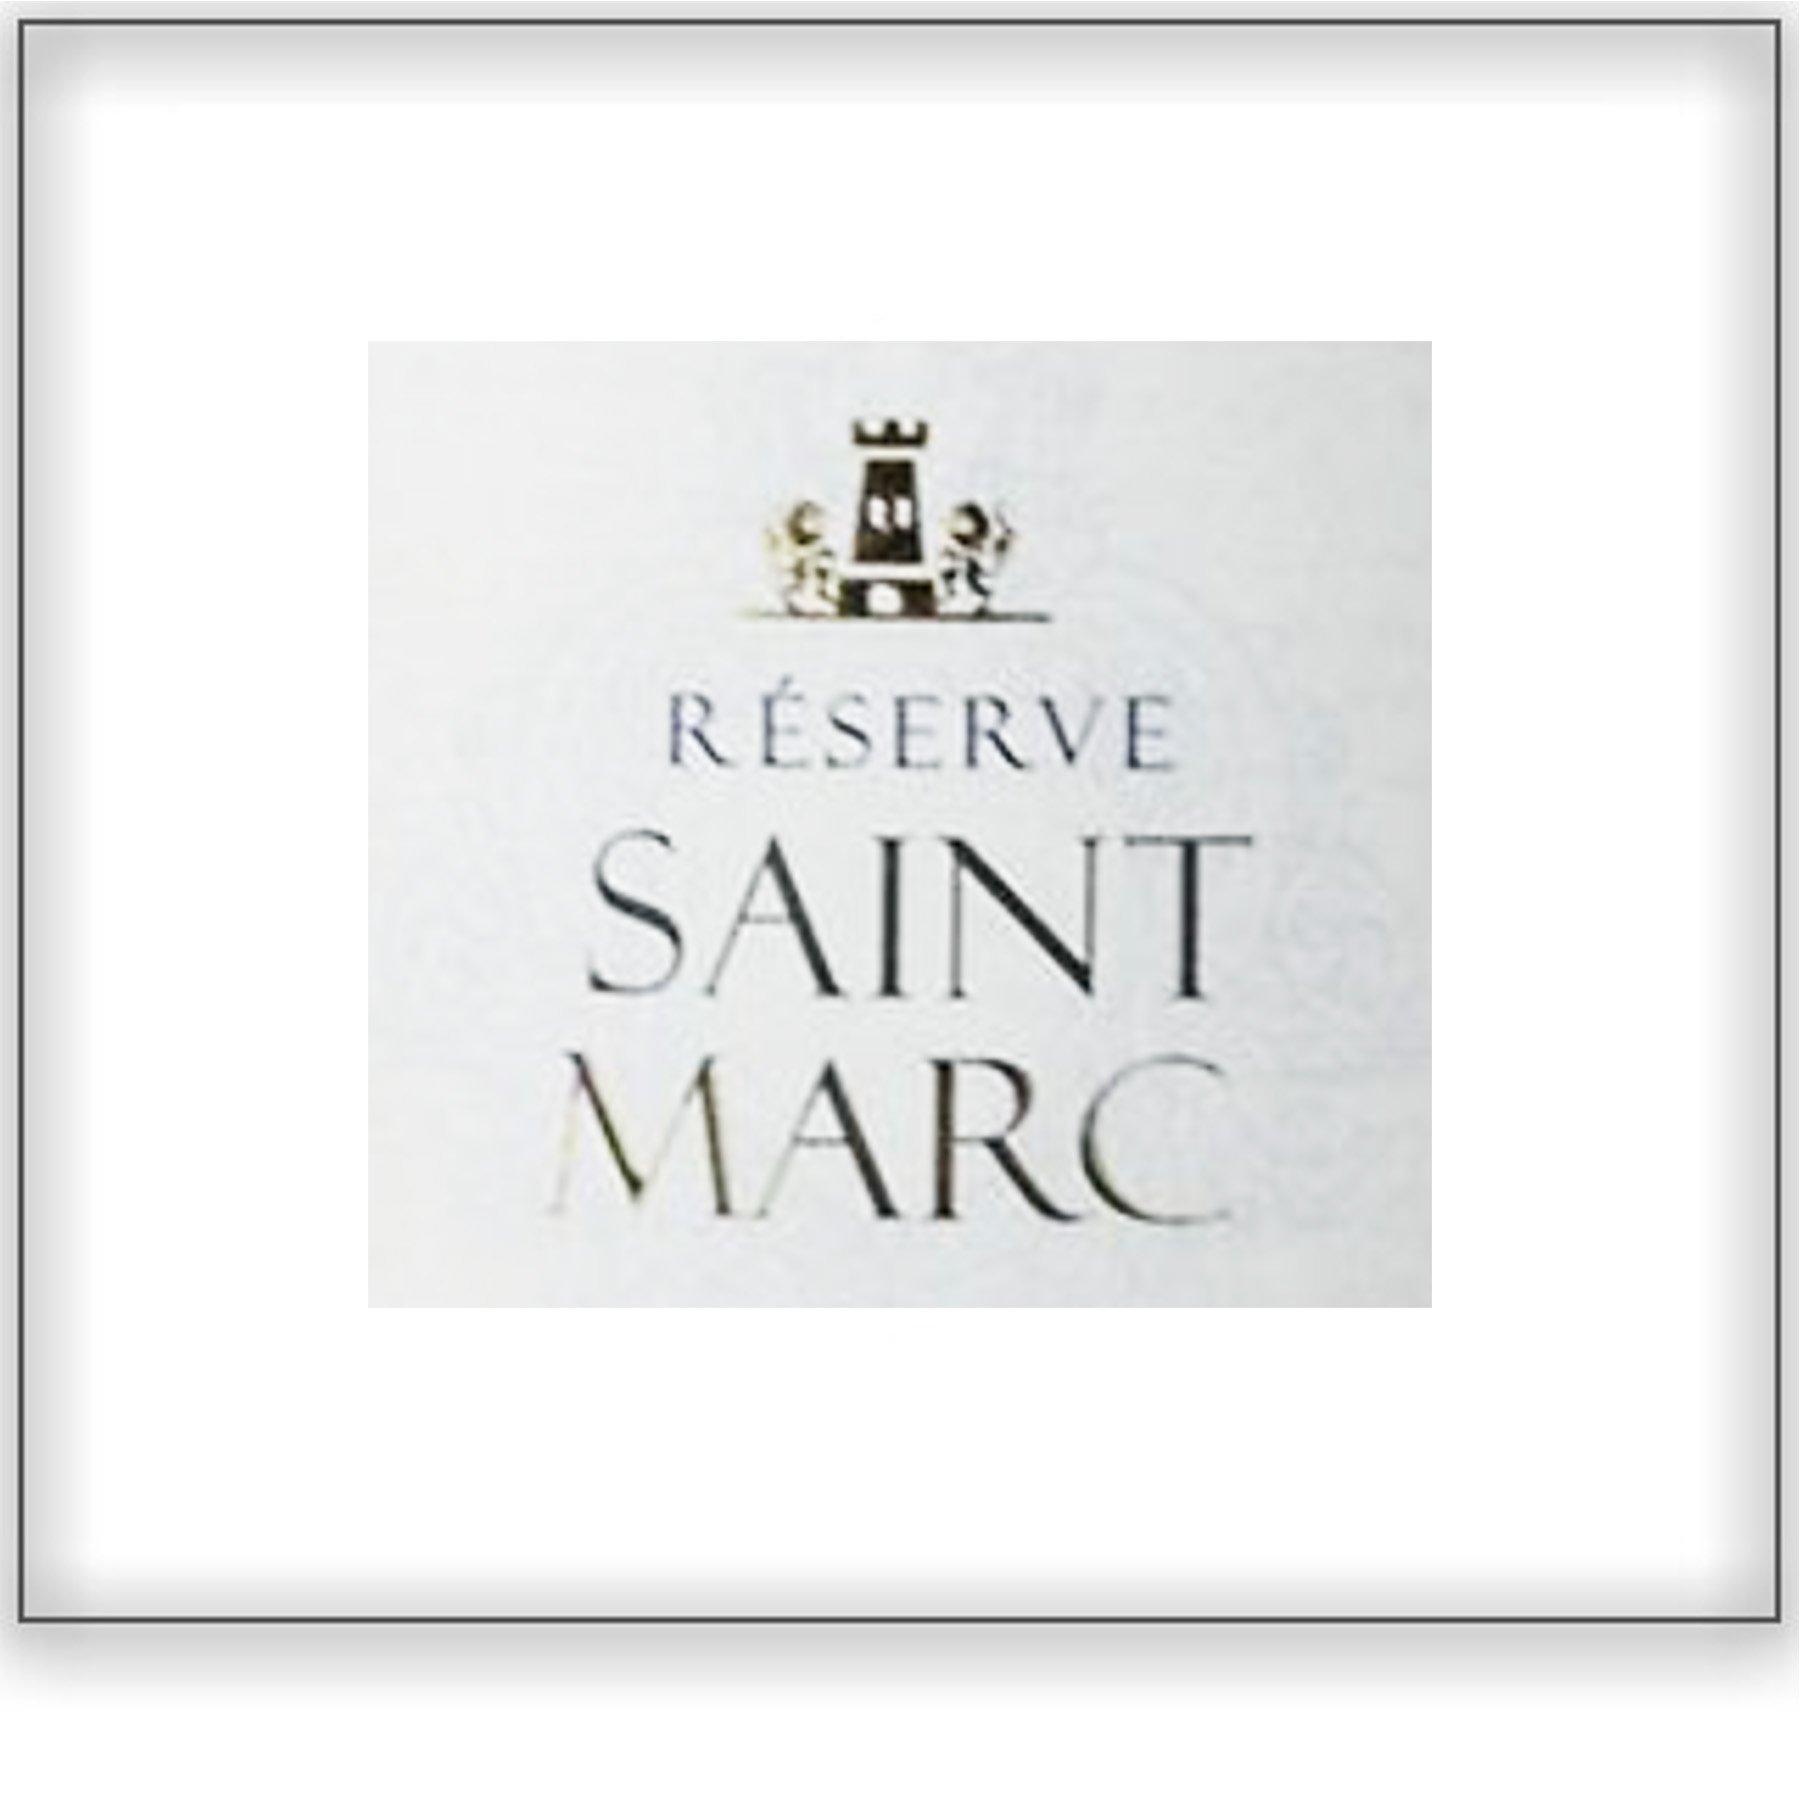 Reserve Saint Marc&lt;a href=/reserve-saint-marc&gt;Languedoc, France ➤&lt;/a&gt;